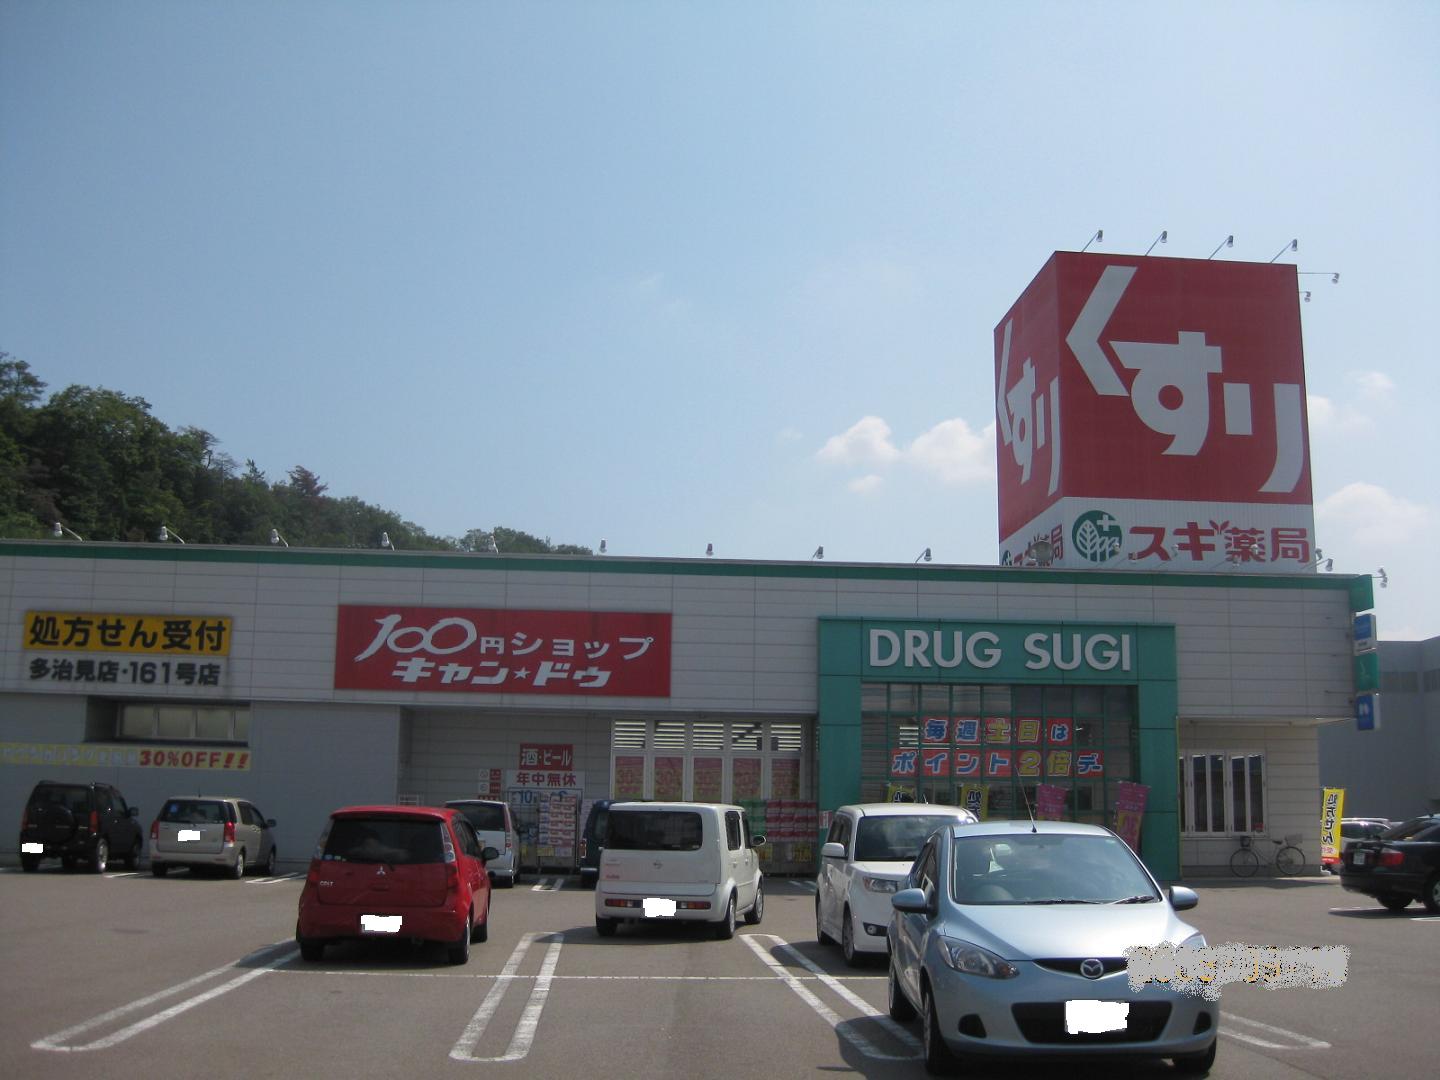 Dorakkusutoa. Cedar pharmacy Tajimi shop 793m until (drugstore)